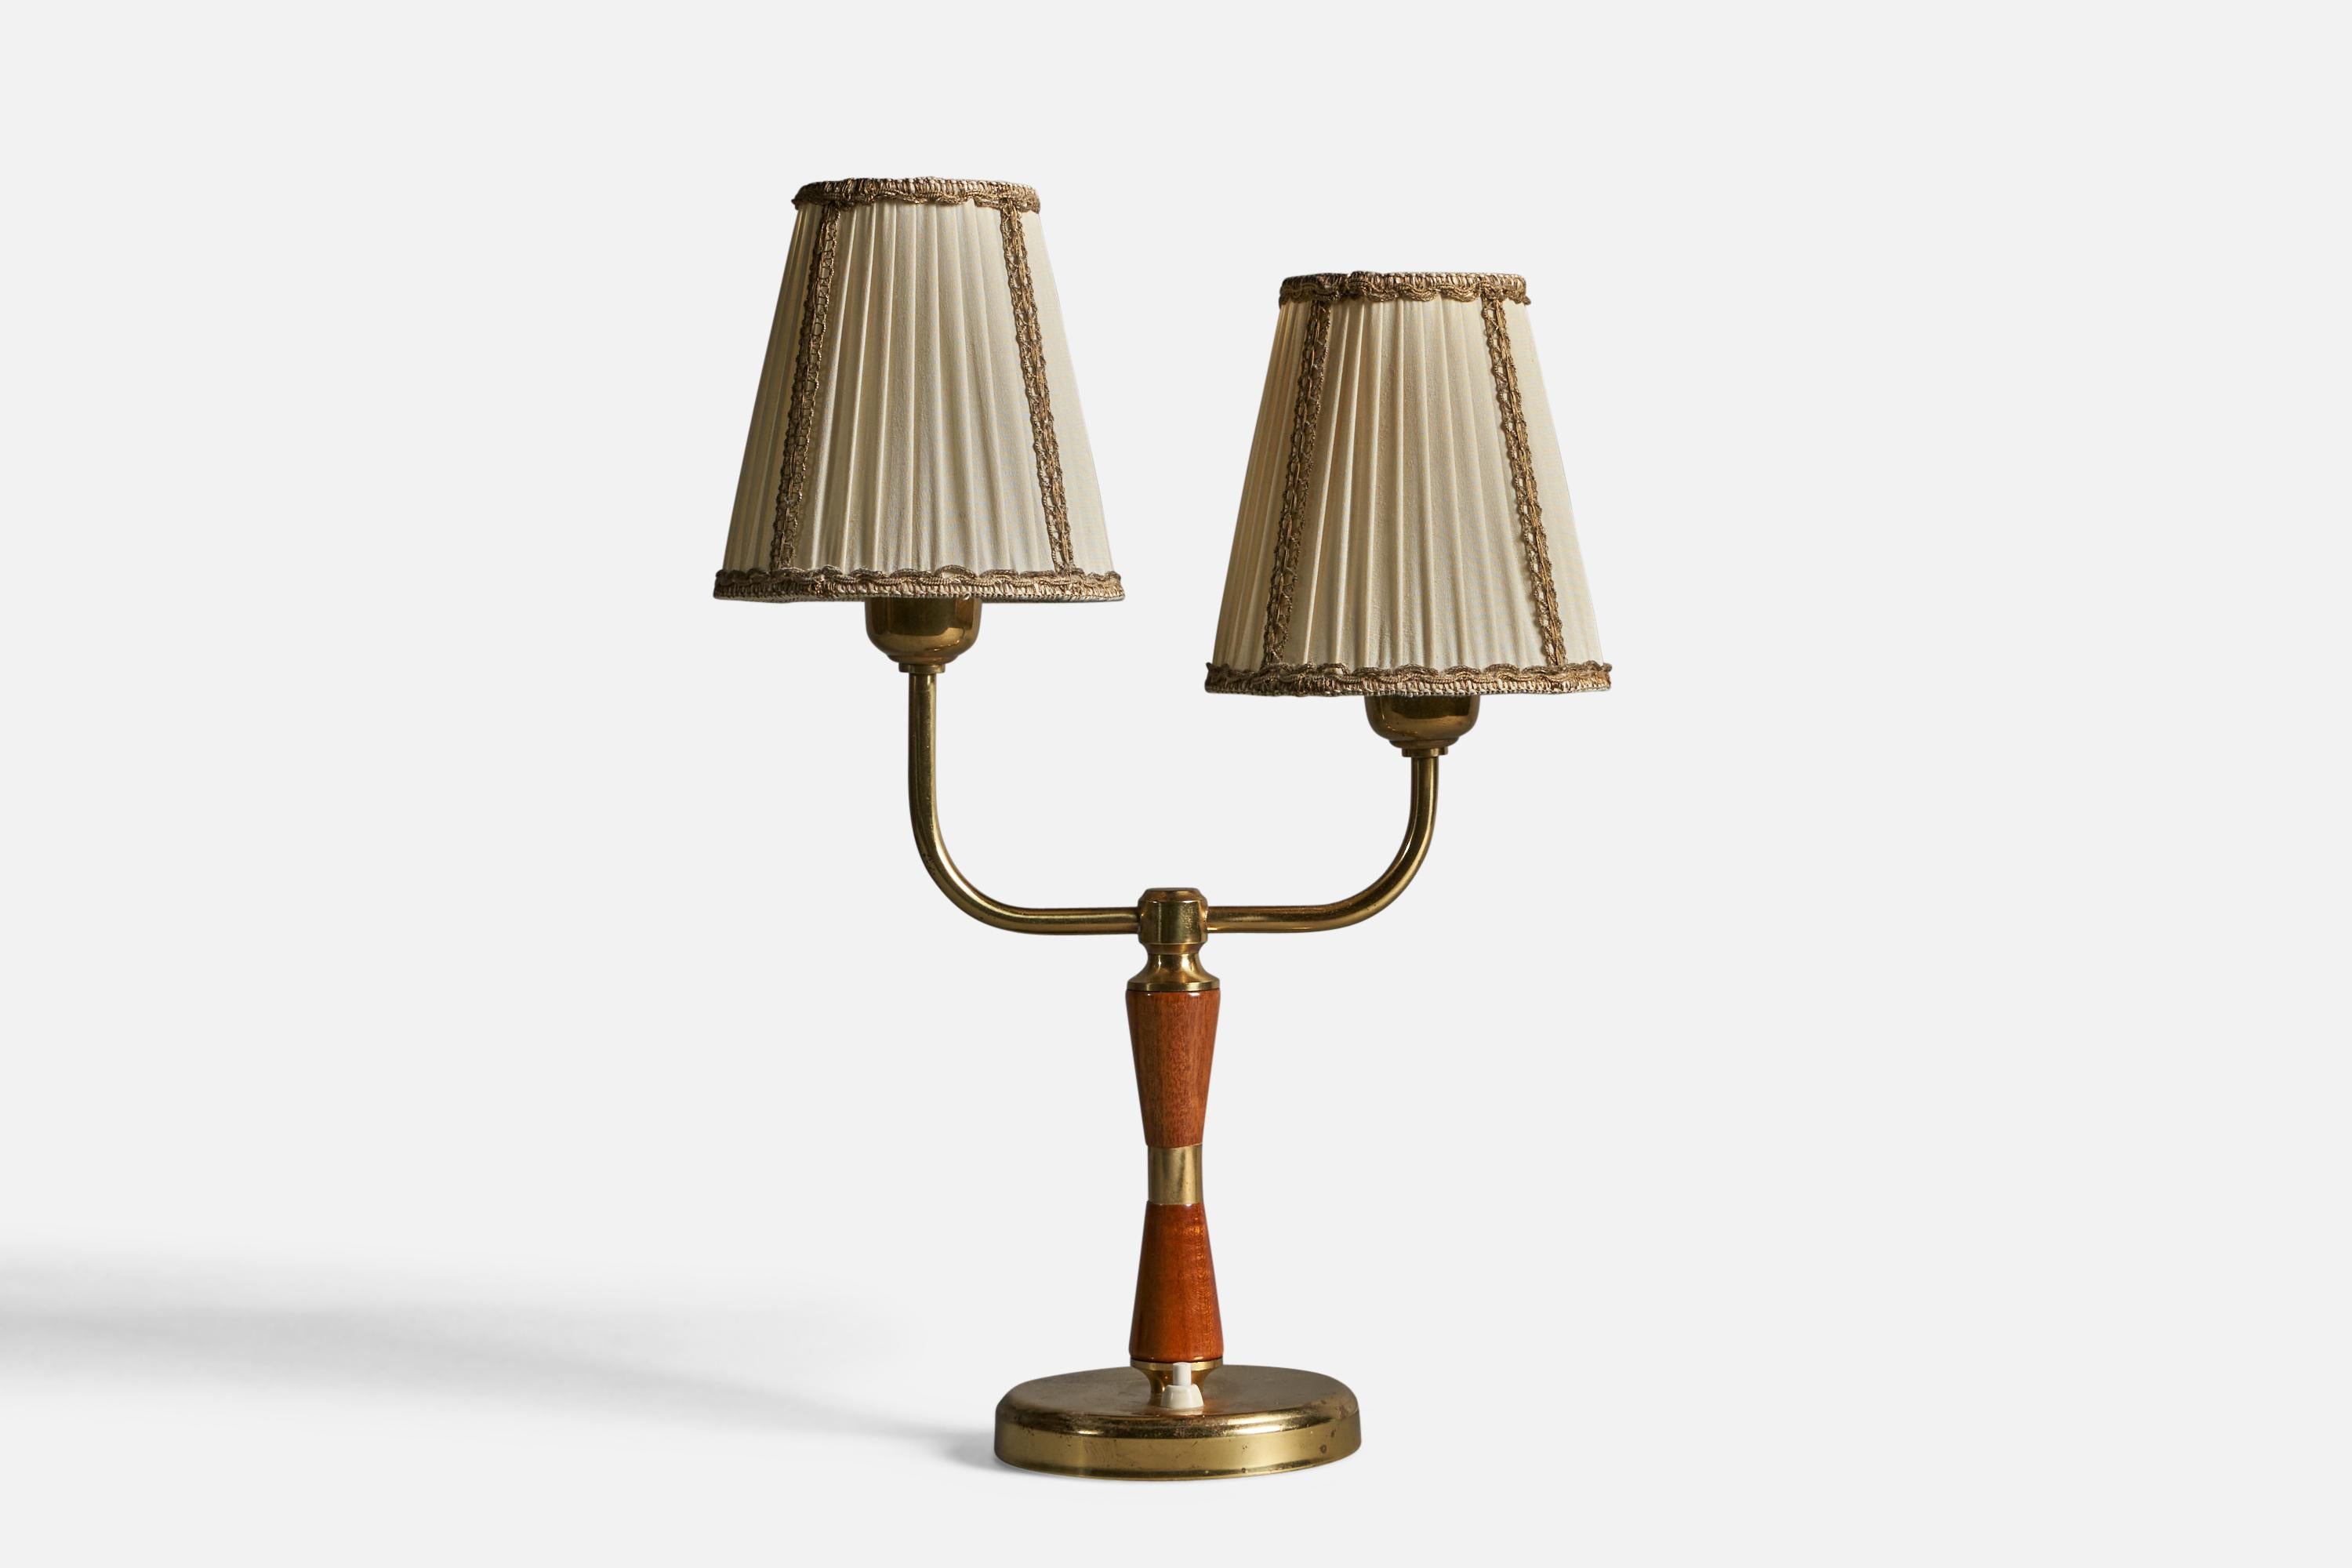 Lampe de table à deux bras en laiton, tissu beige et chêne teinté, conçue et produite par EOS, Suède, années 1940.

Dimensions globales (pouces) : 17.25